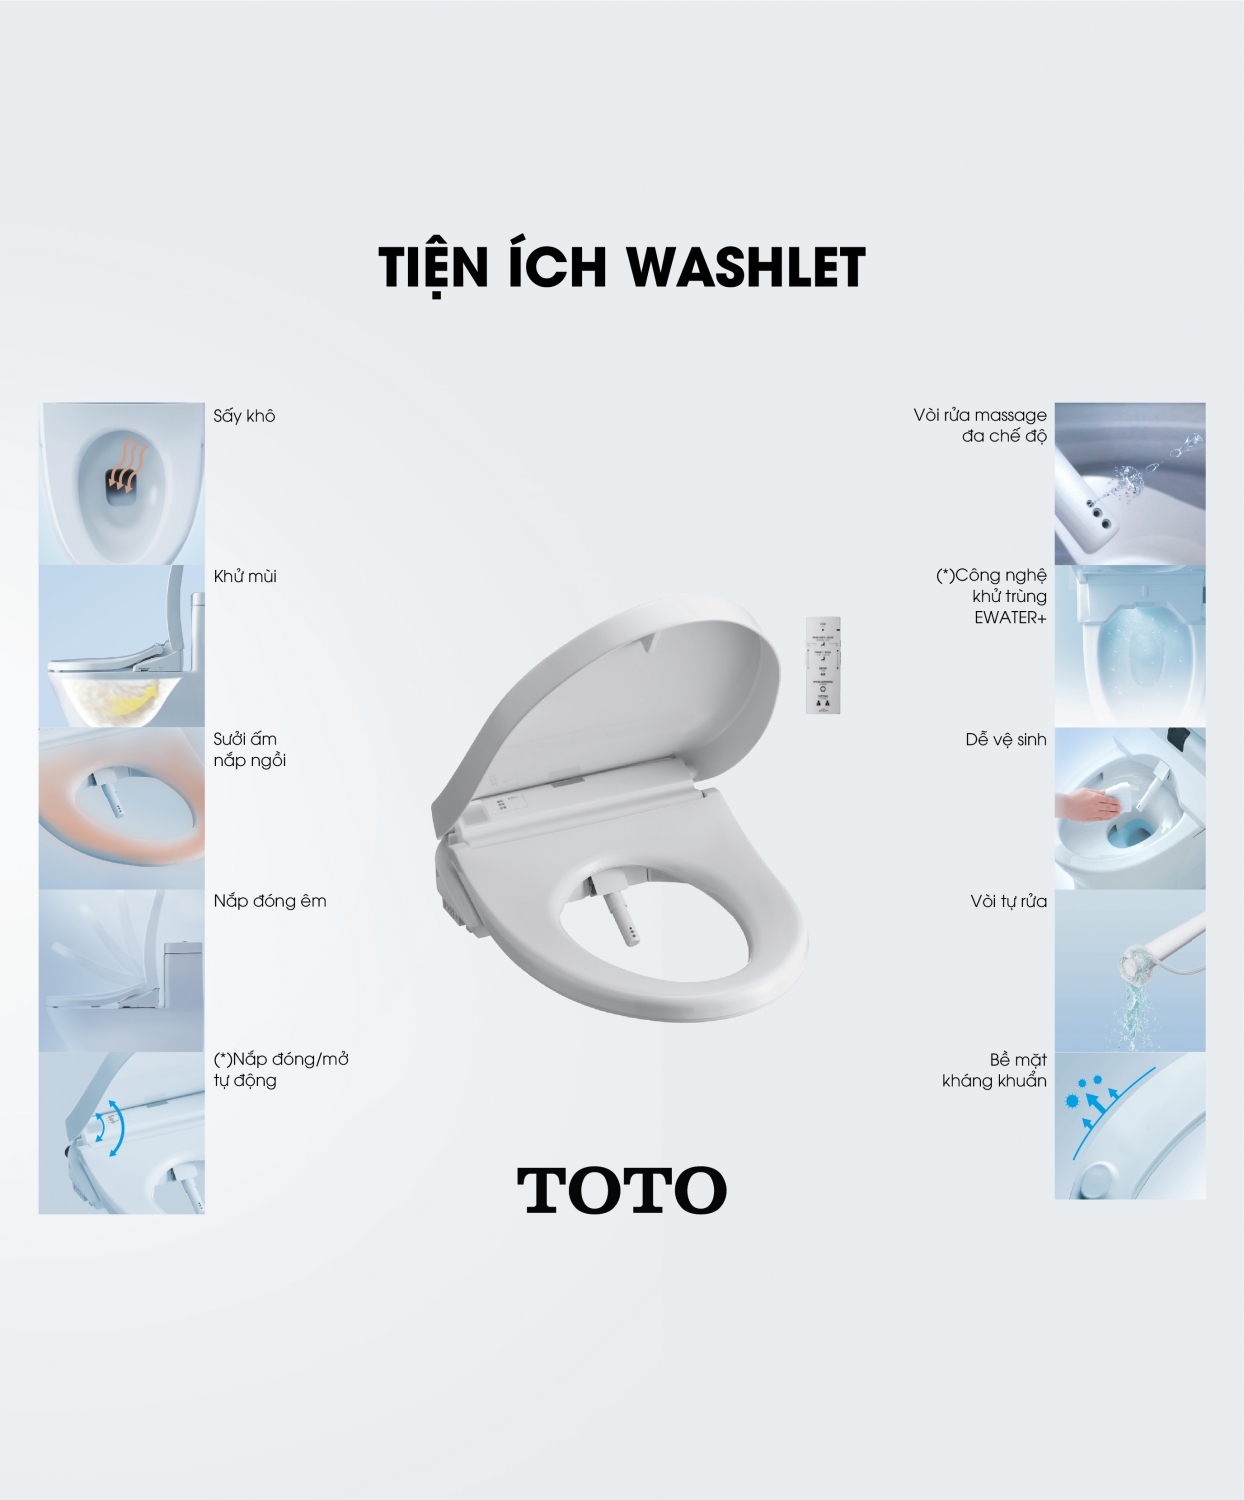 Nắp bệt Toto - Bí quyết cho vệ sinh cá nhân hiệu quả và tiện lợi